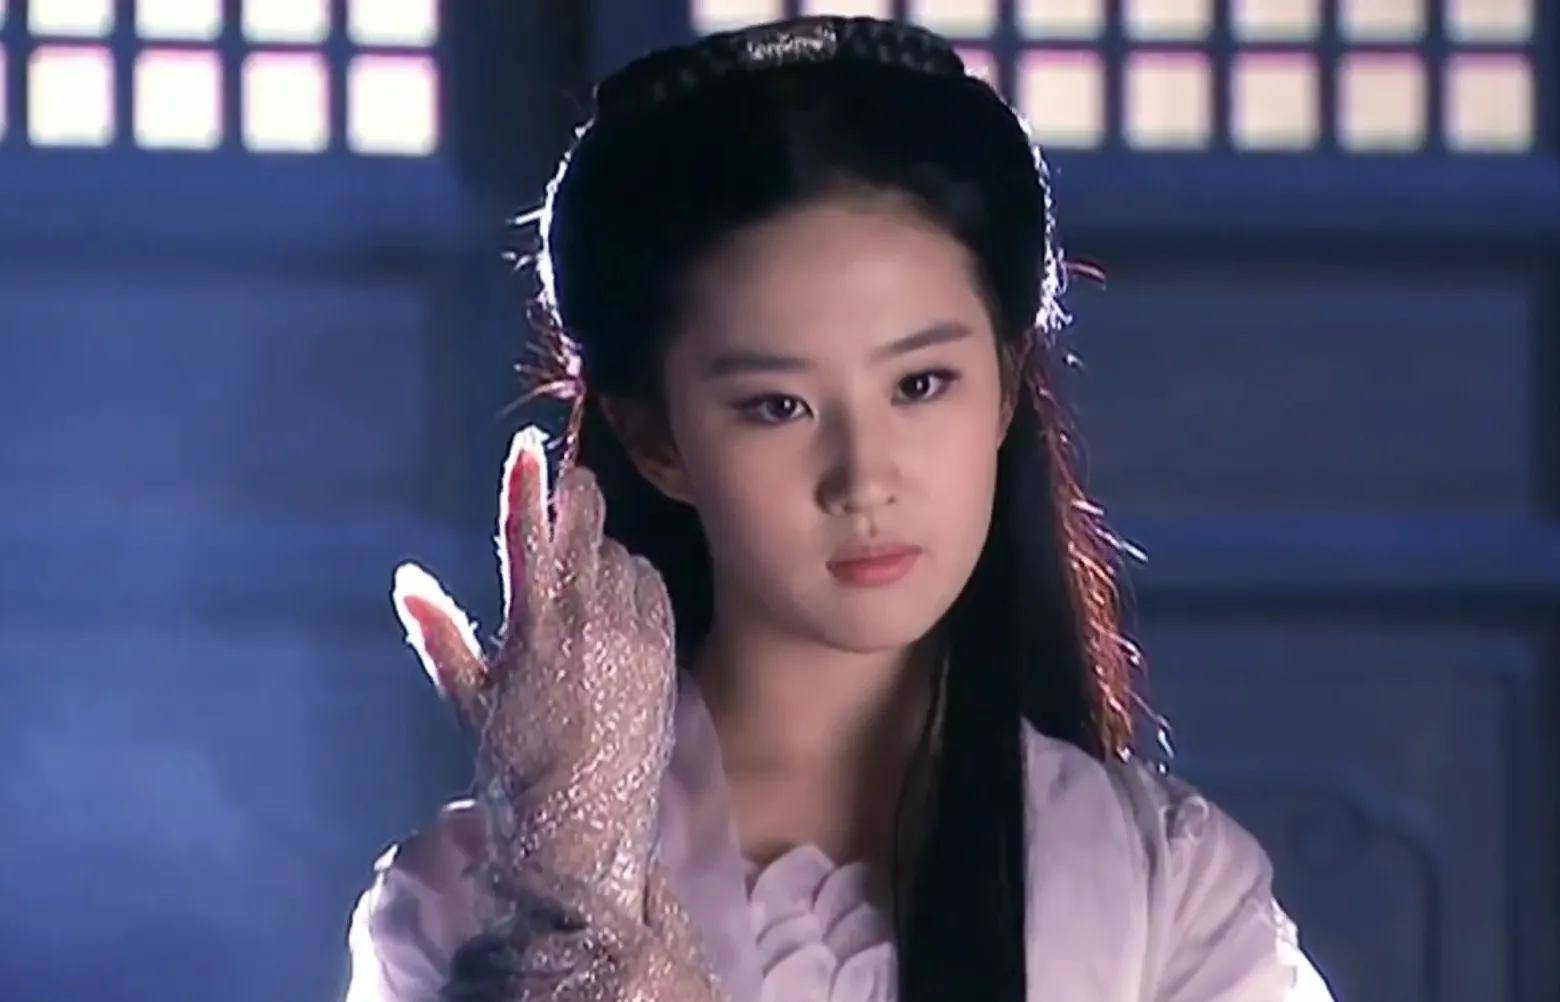 同样扮演过小龙女的刘亦菲,在06版《神雕侠侣》中的白绫打戏也是极具